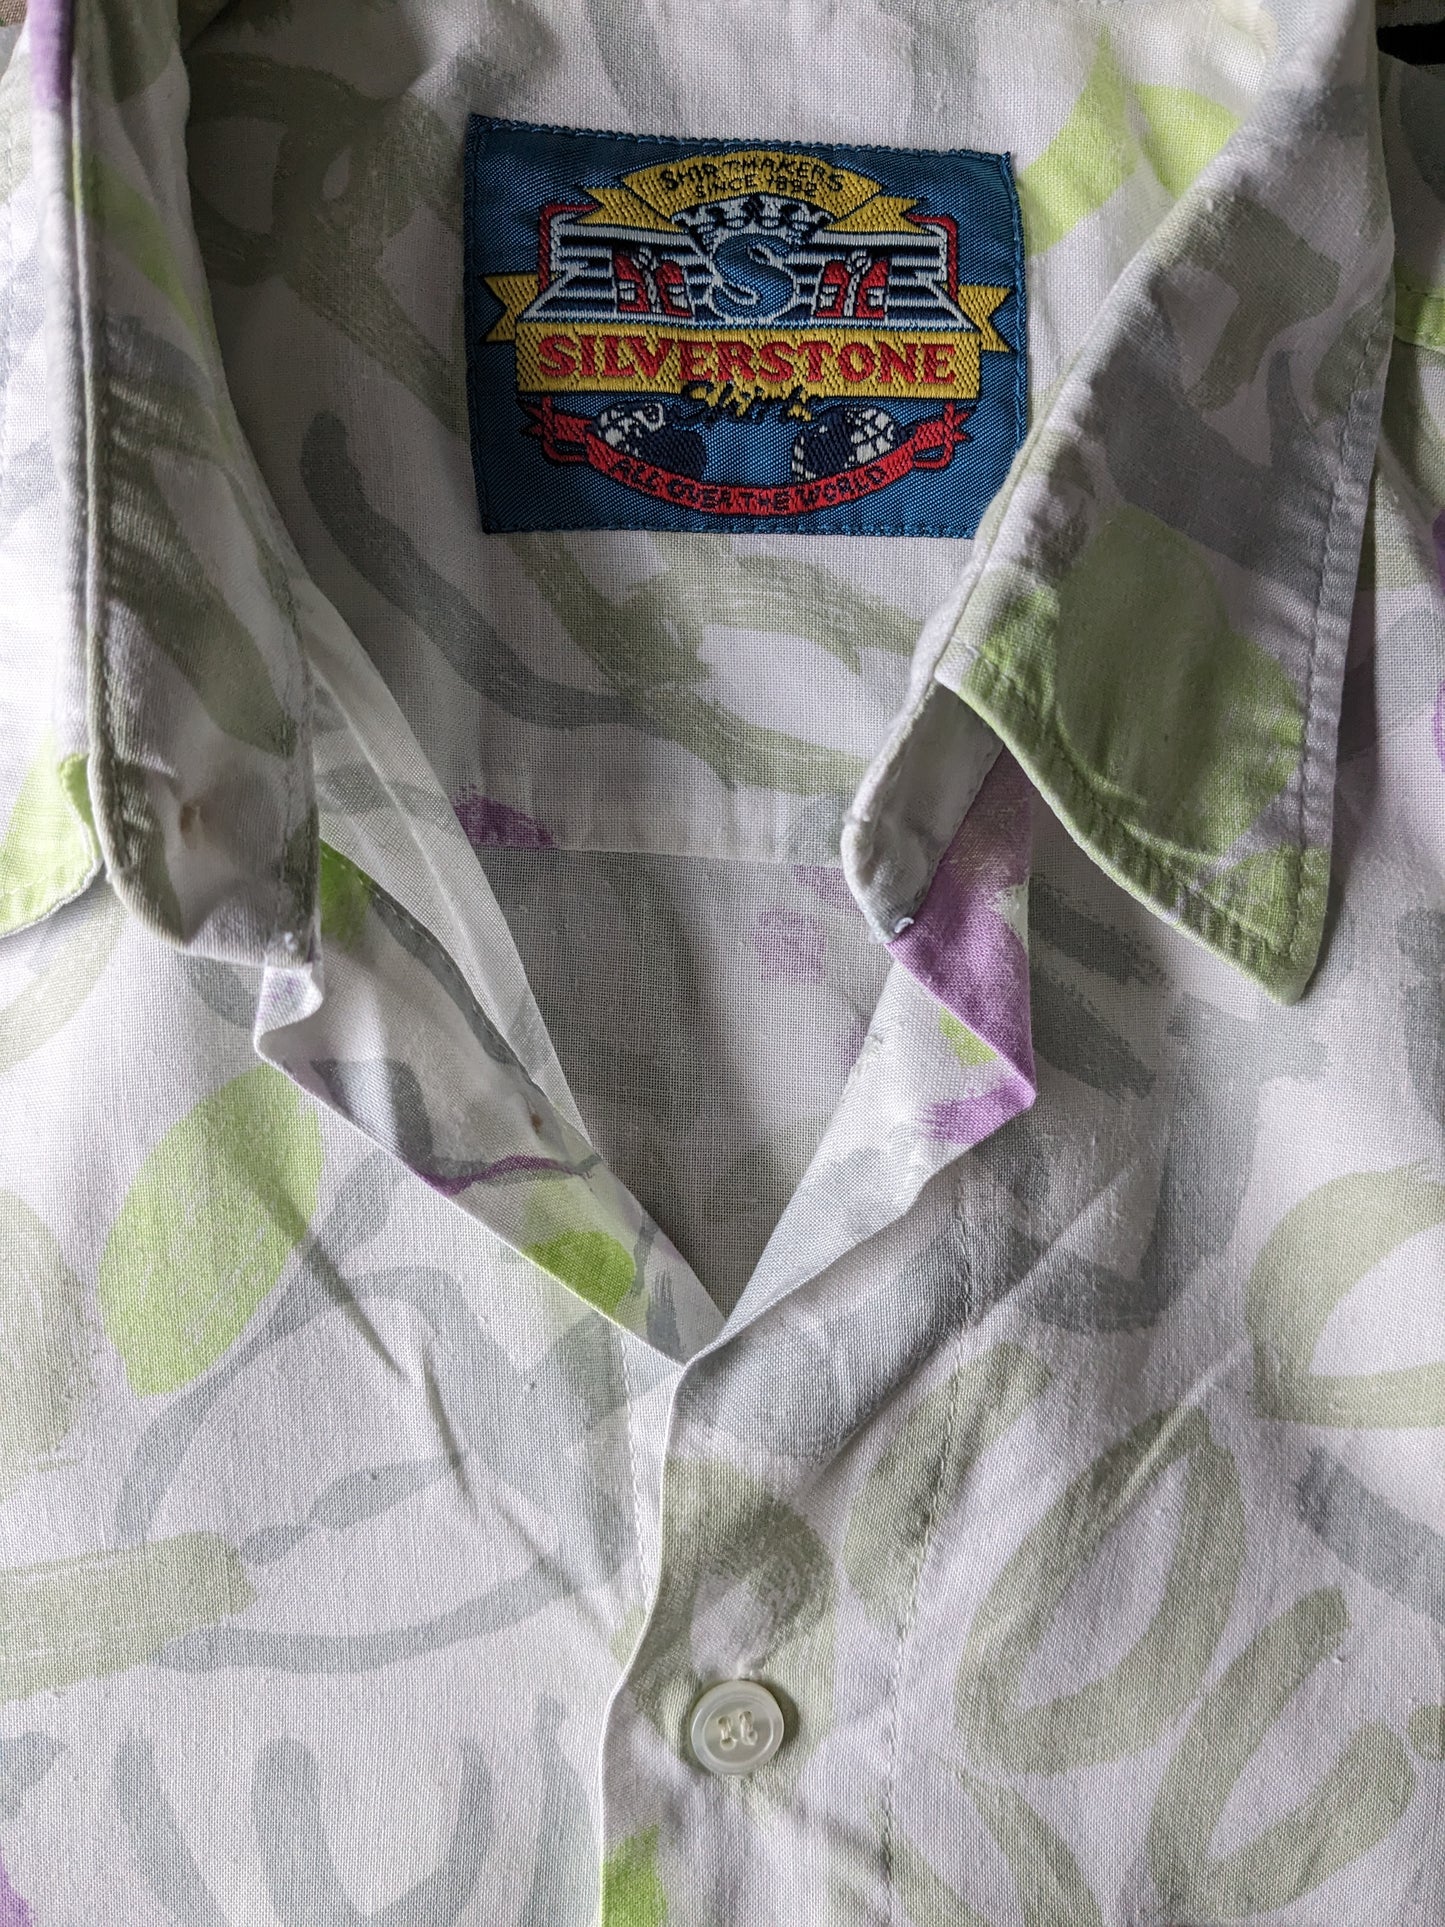 Vintage 90er Silverstone -Shirt Kurzarm. Lila grün weißer Druck. Größe L.